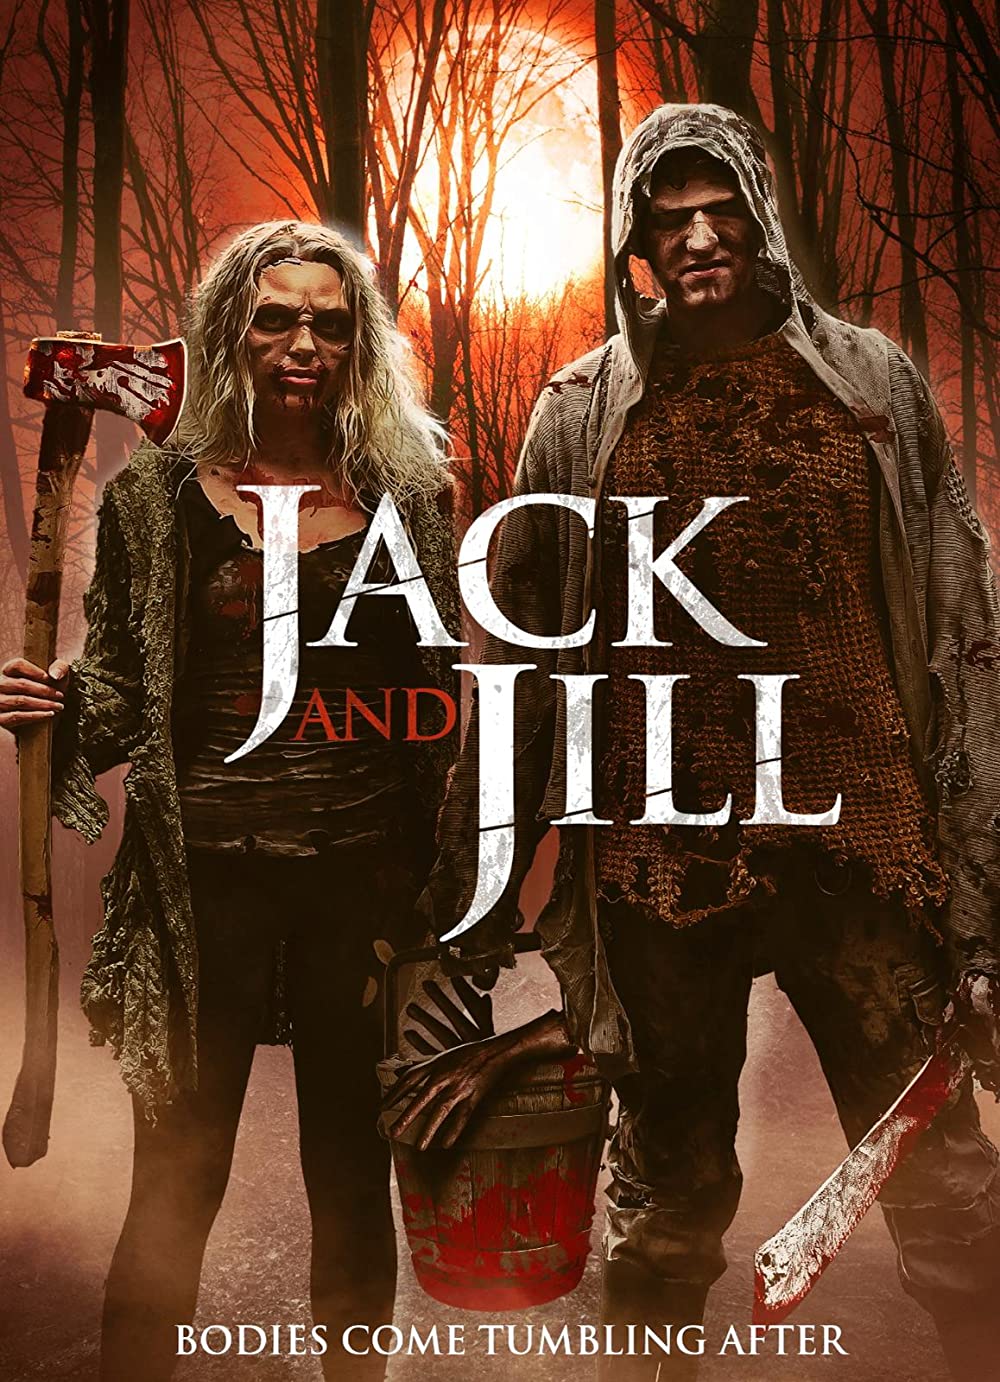 ดูหนังออนไลน์ The Legend of Jack and Jill (2021) ตำนานของแจ็คและจิลล์